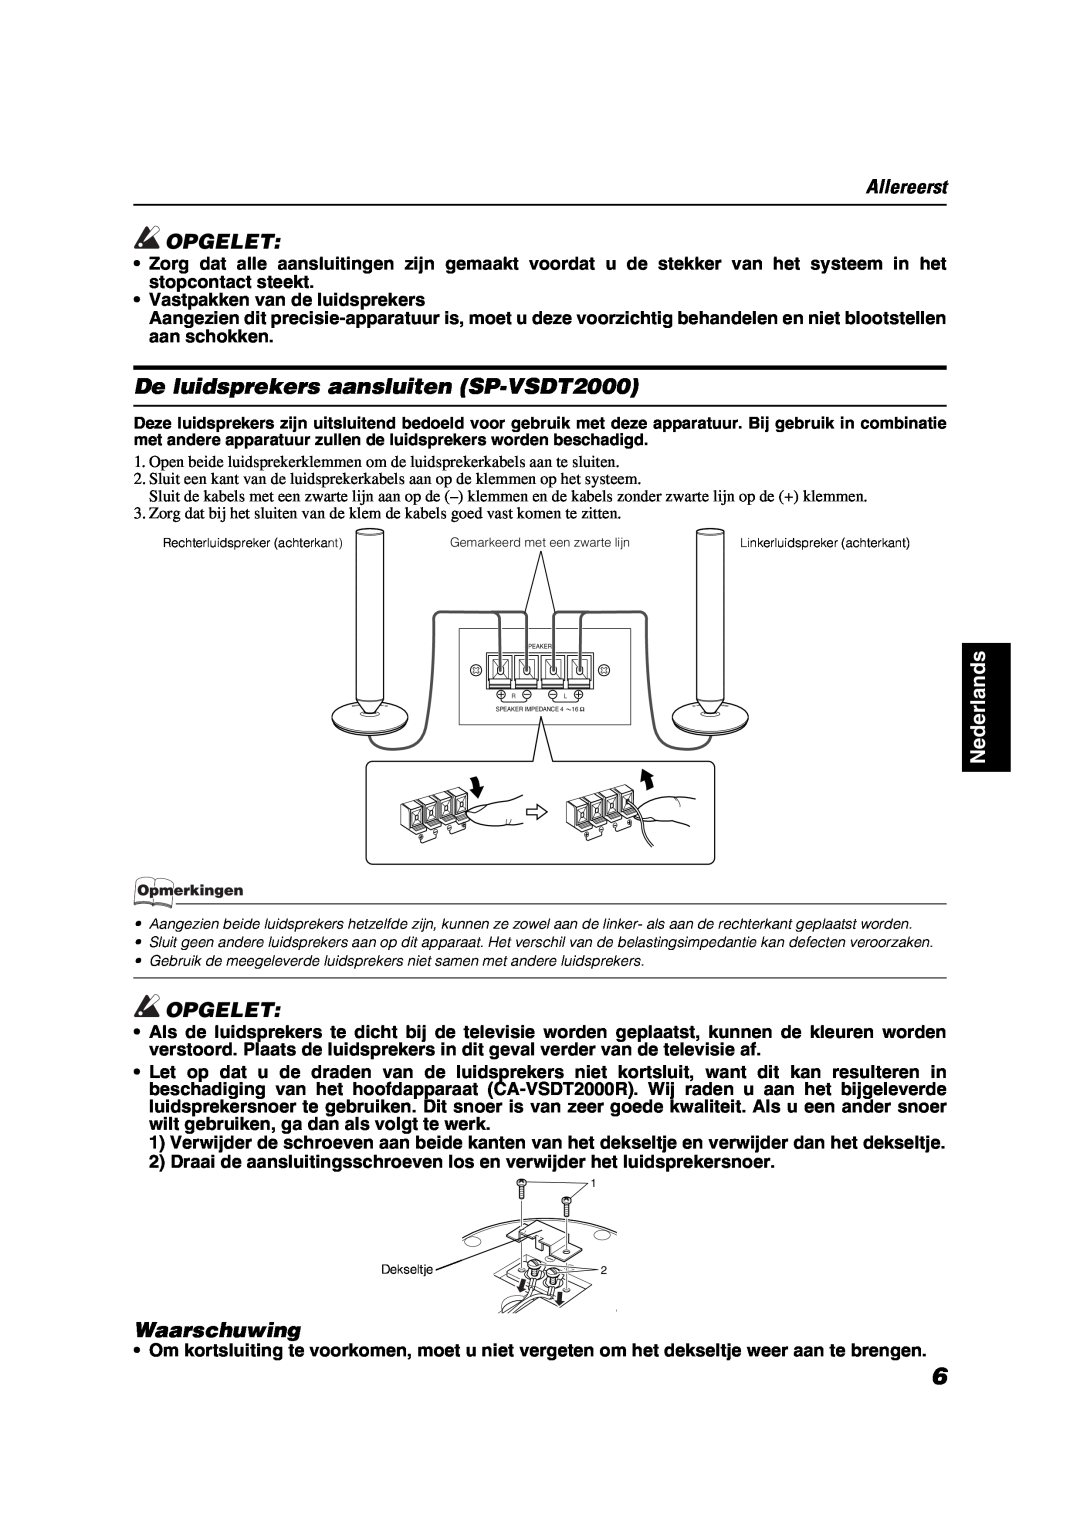 JVC VS-DT2000R manual De luidsprekers aansluiten SP-VSDT2000, Waarschuwing, Allereerst, Opgelet, Nederlands 